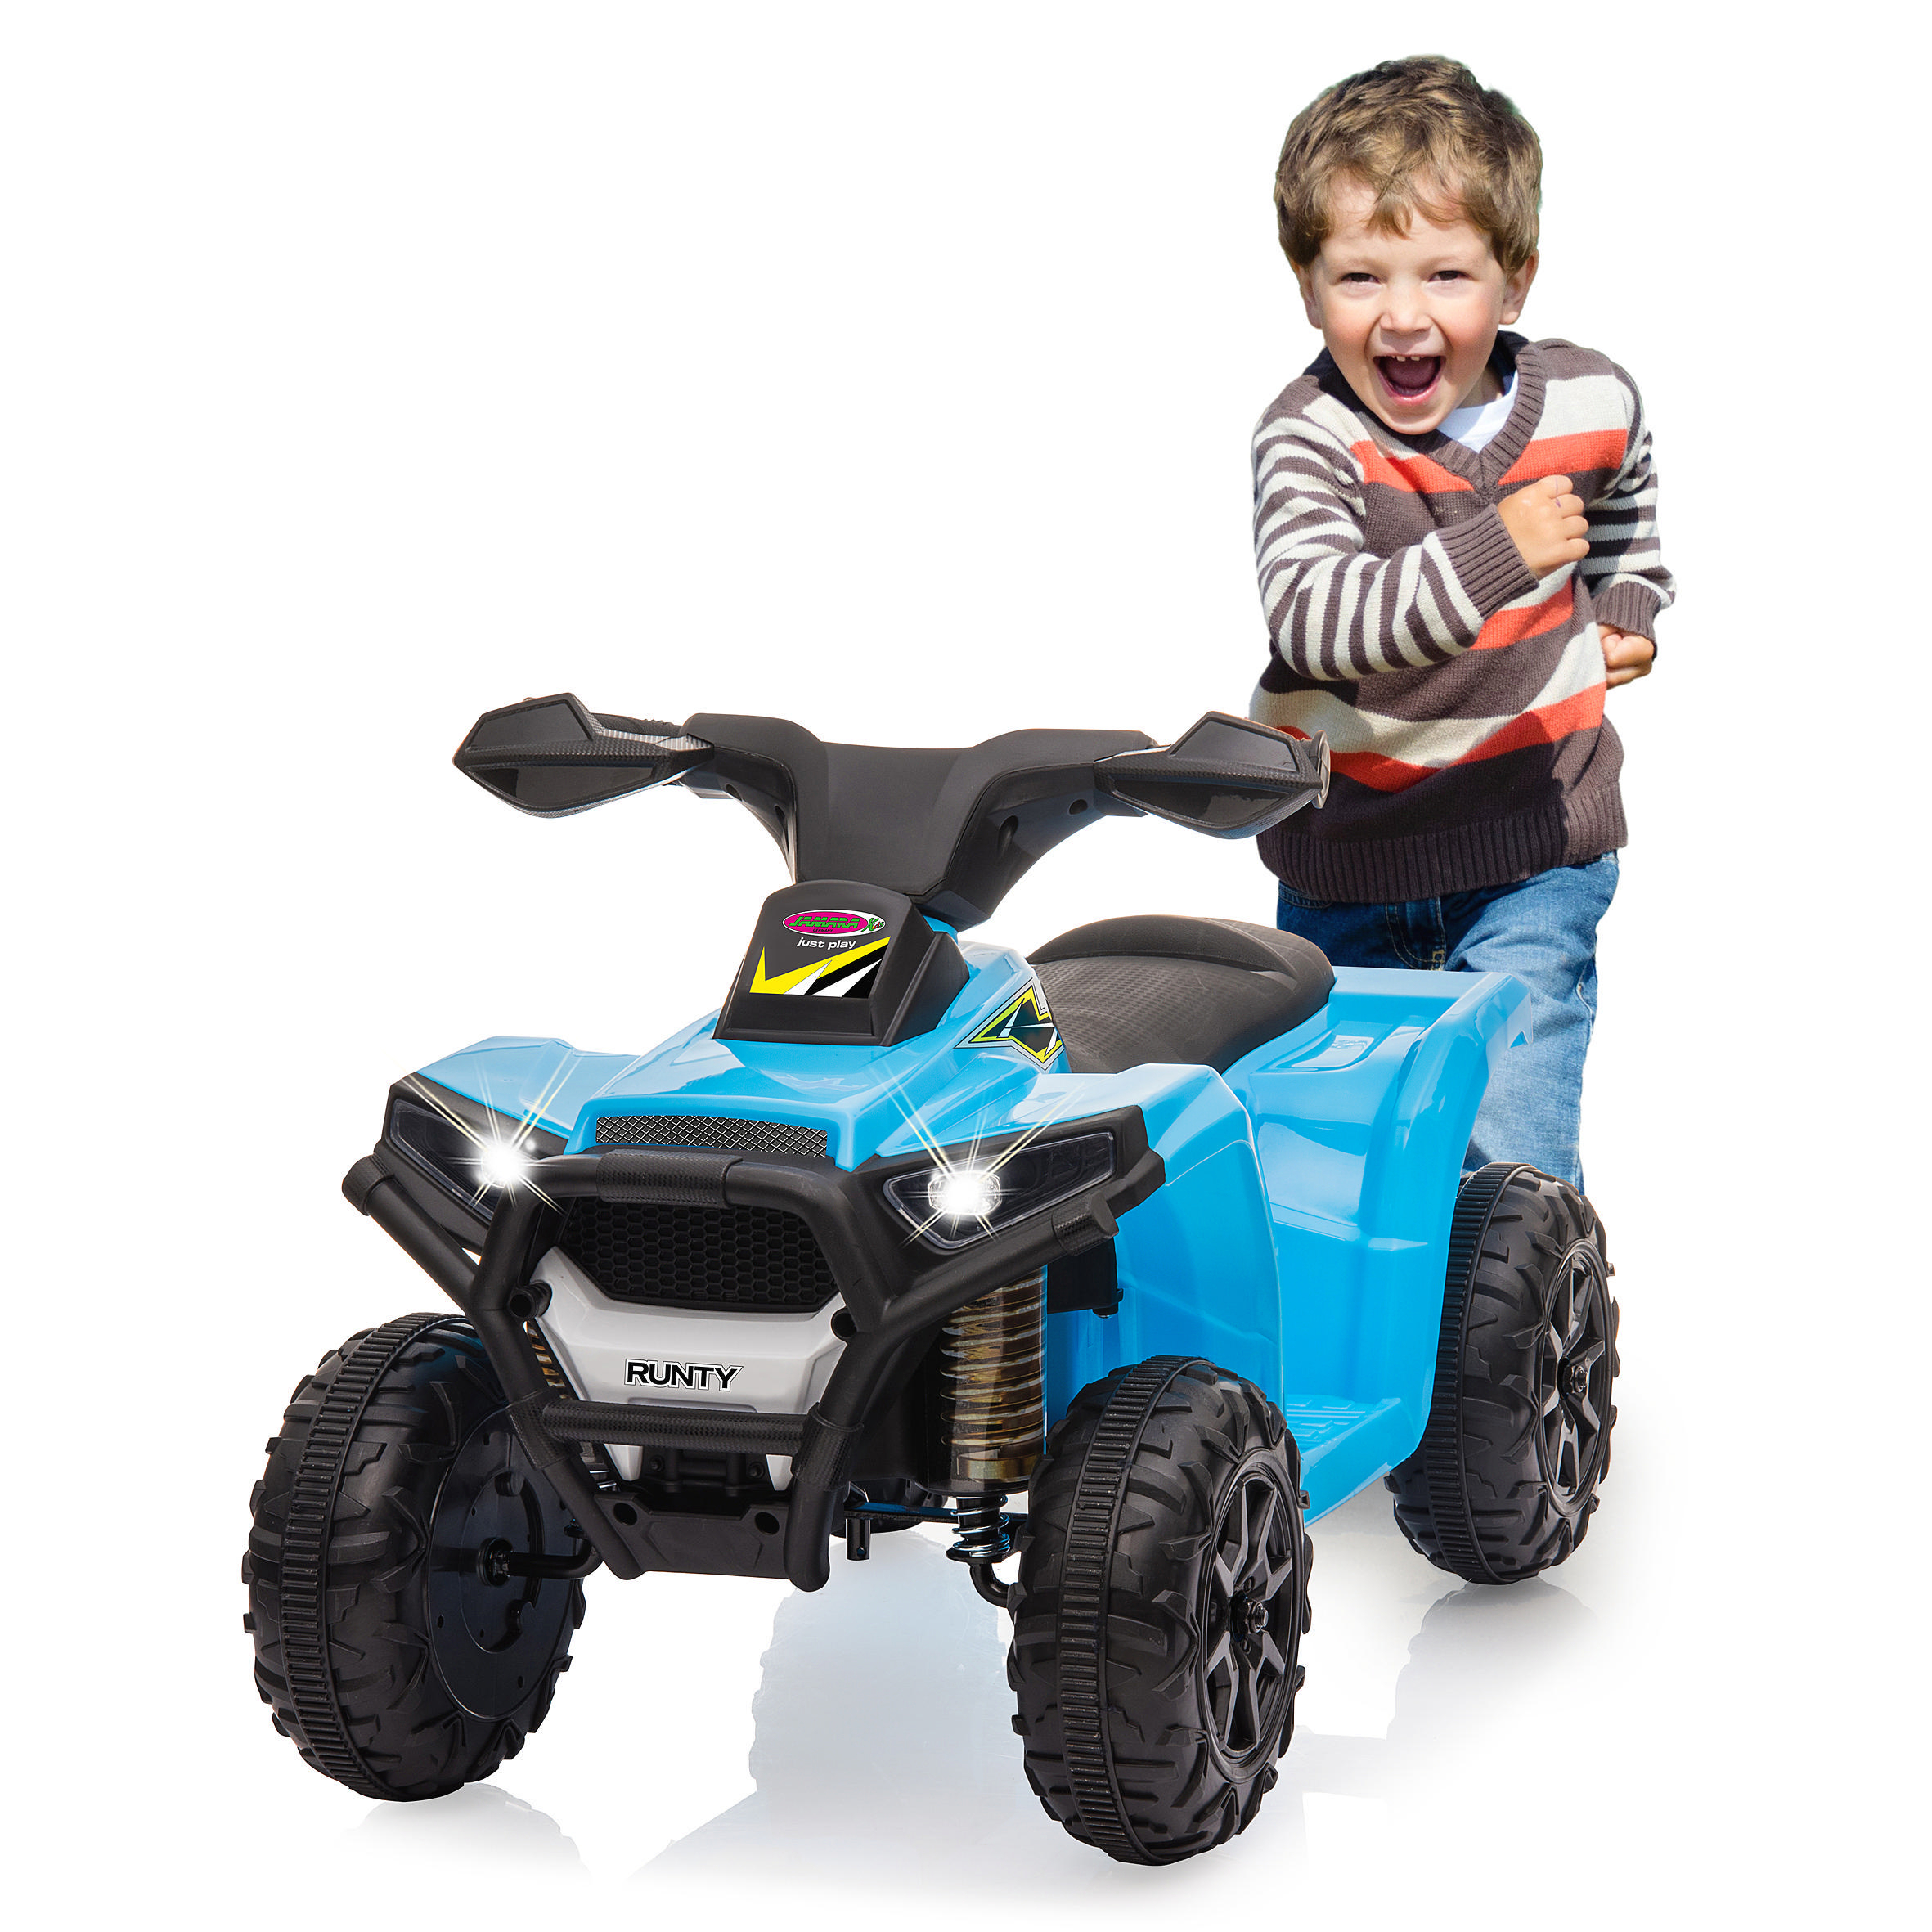 JAMARA Ride-On Mini Quad Runty Blau 6V Kinderfahrzeug